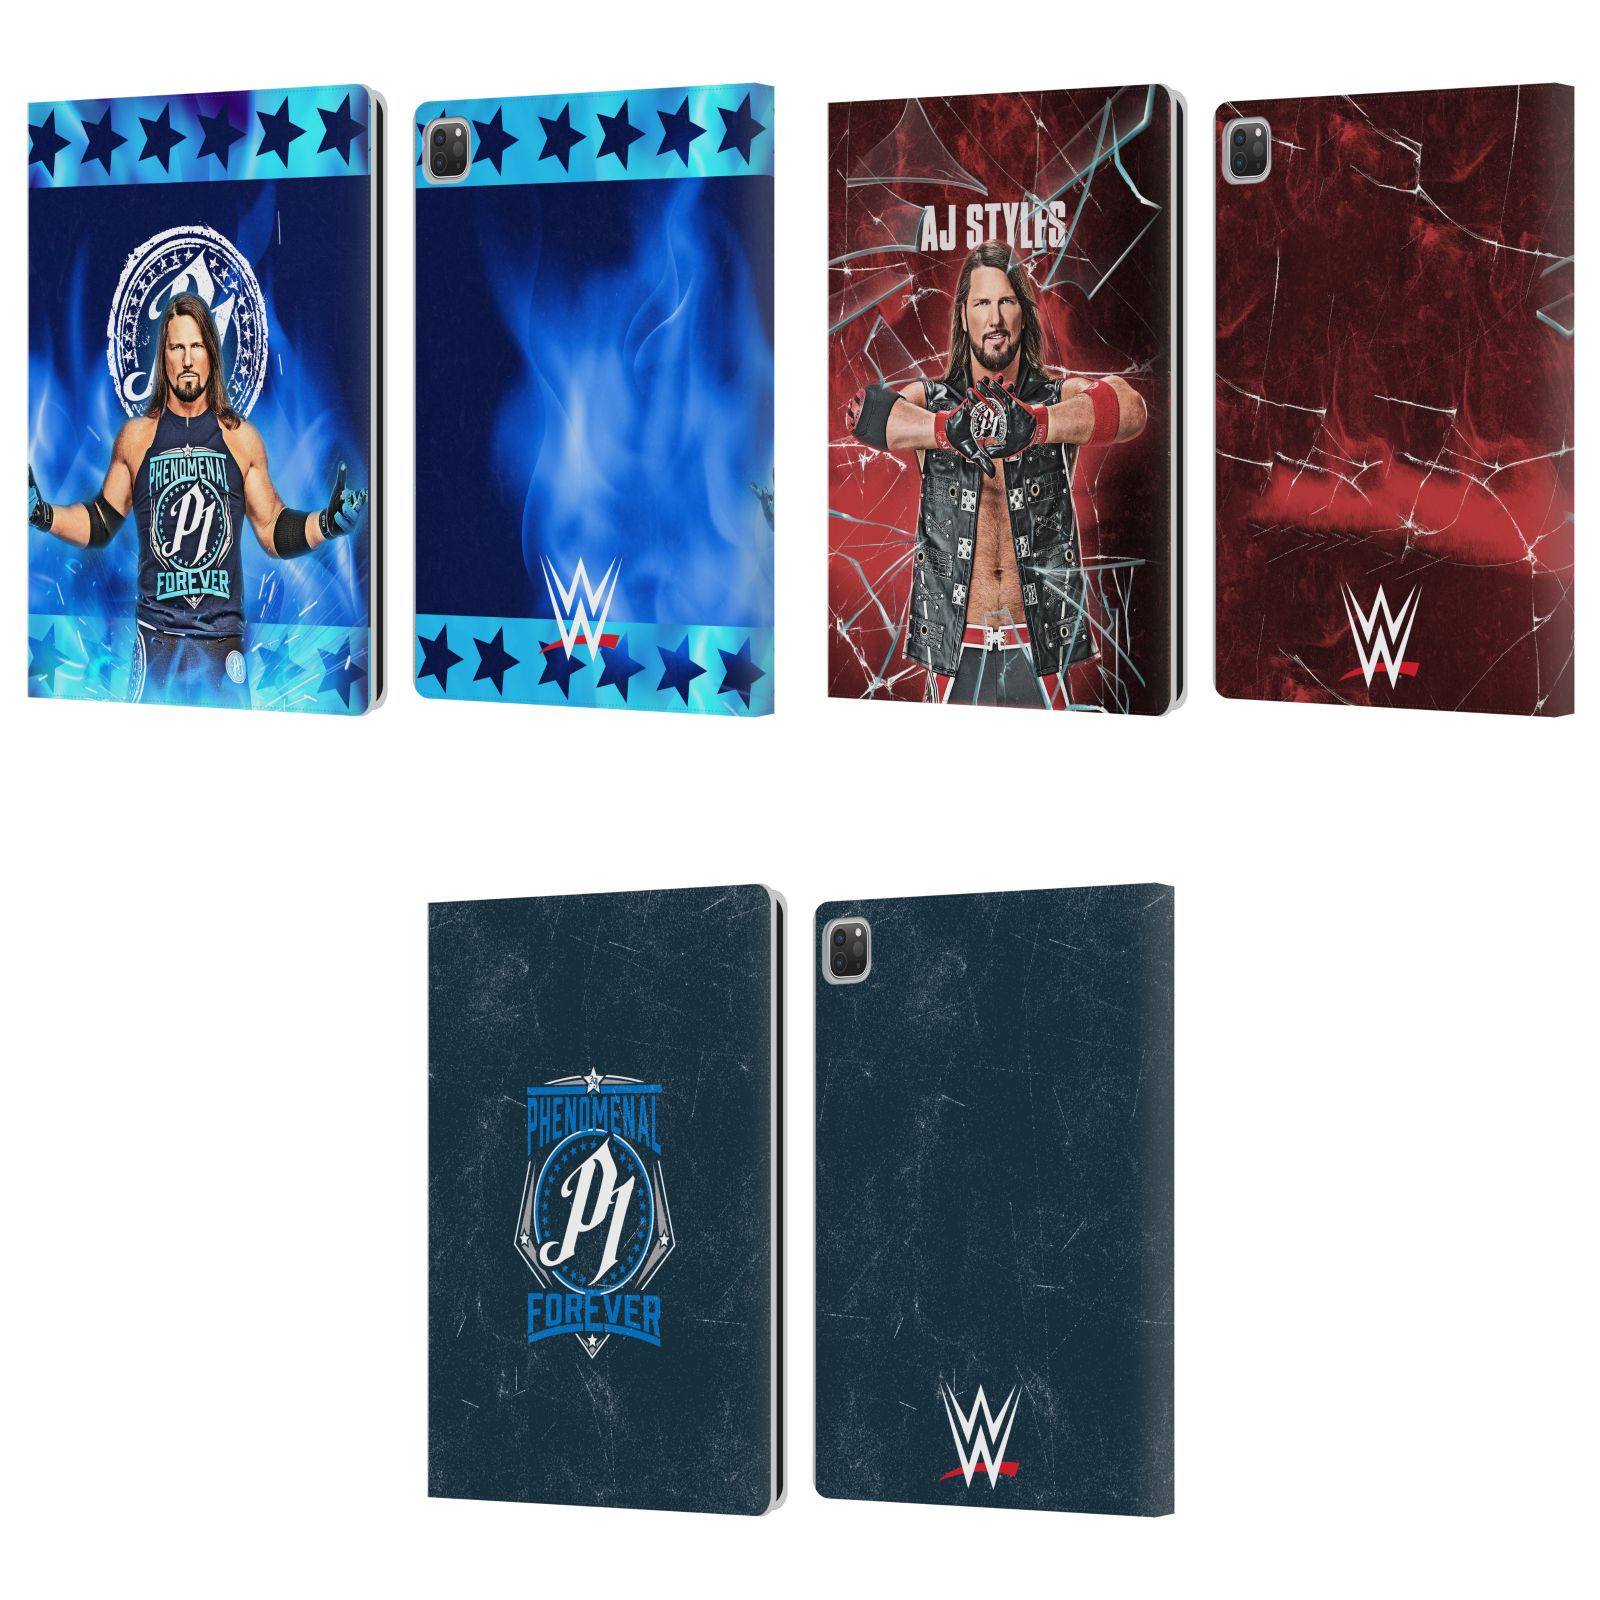 公式ライセンス WWE AJスタイルズ レザー手帳型ウォレットタイプケース Apple iPad スマホケース 全機種対応 グッズ